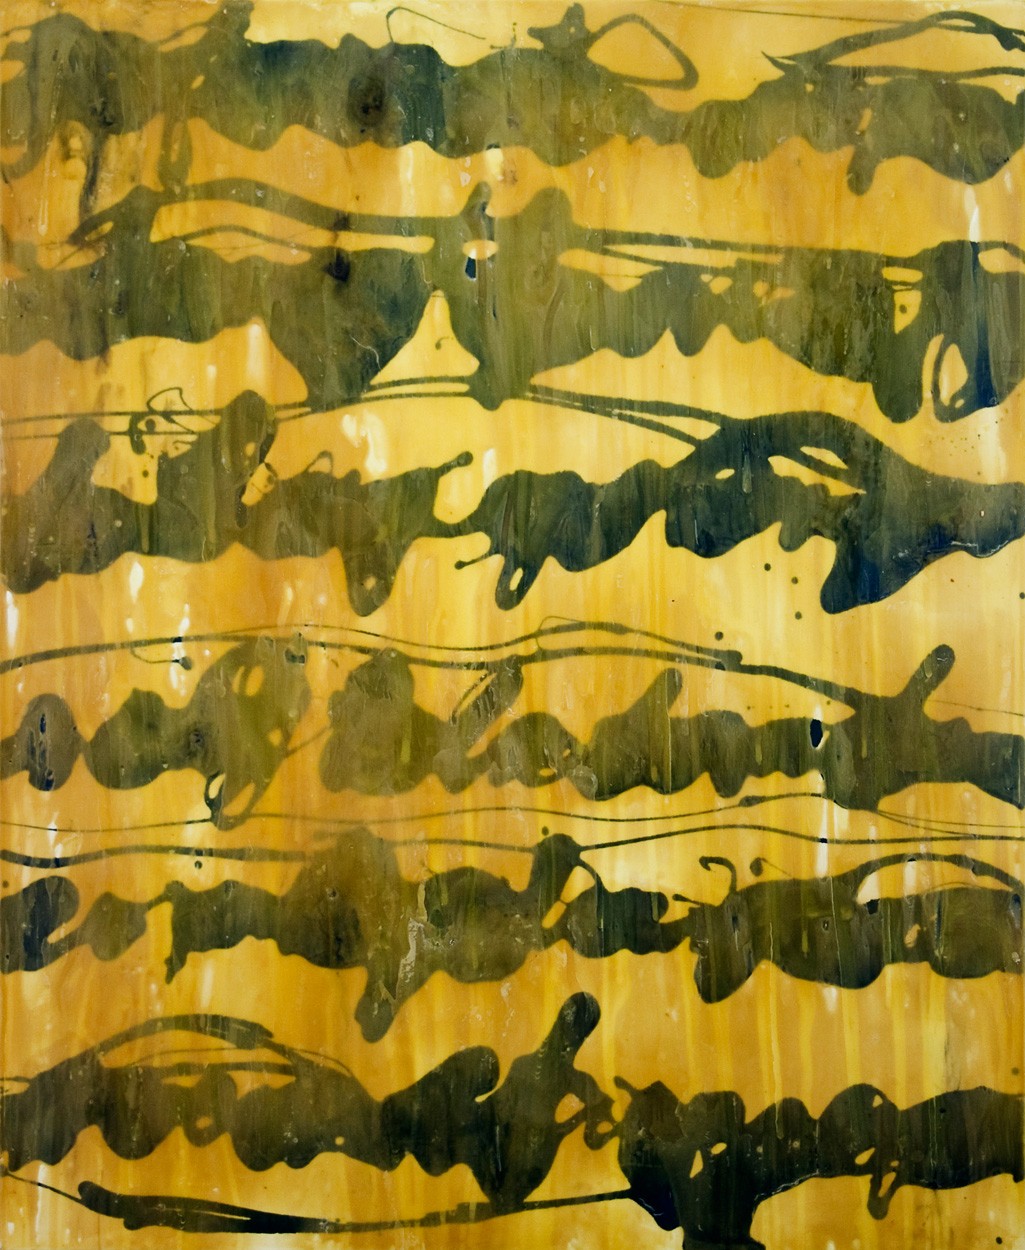 Malerei Stenografie #12 | Künstler Marek Schovanek, Bienenwachs und Glasurlack auf Leinwand